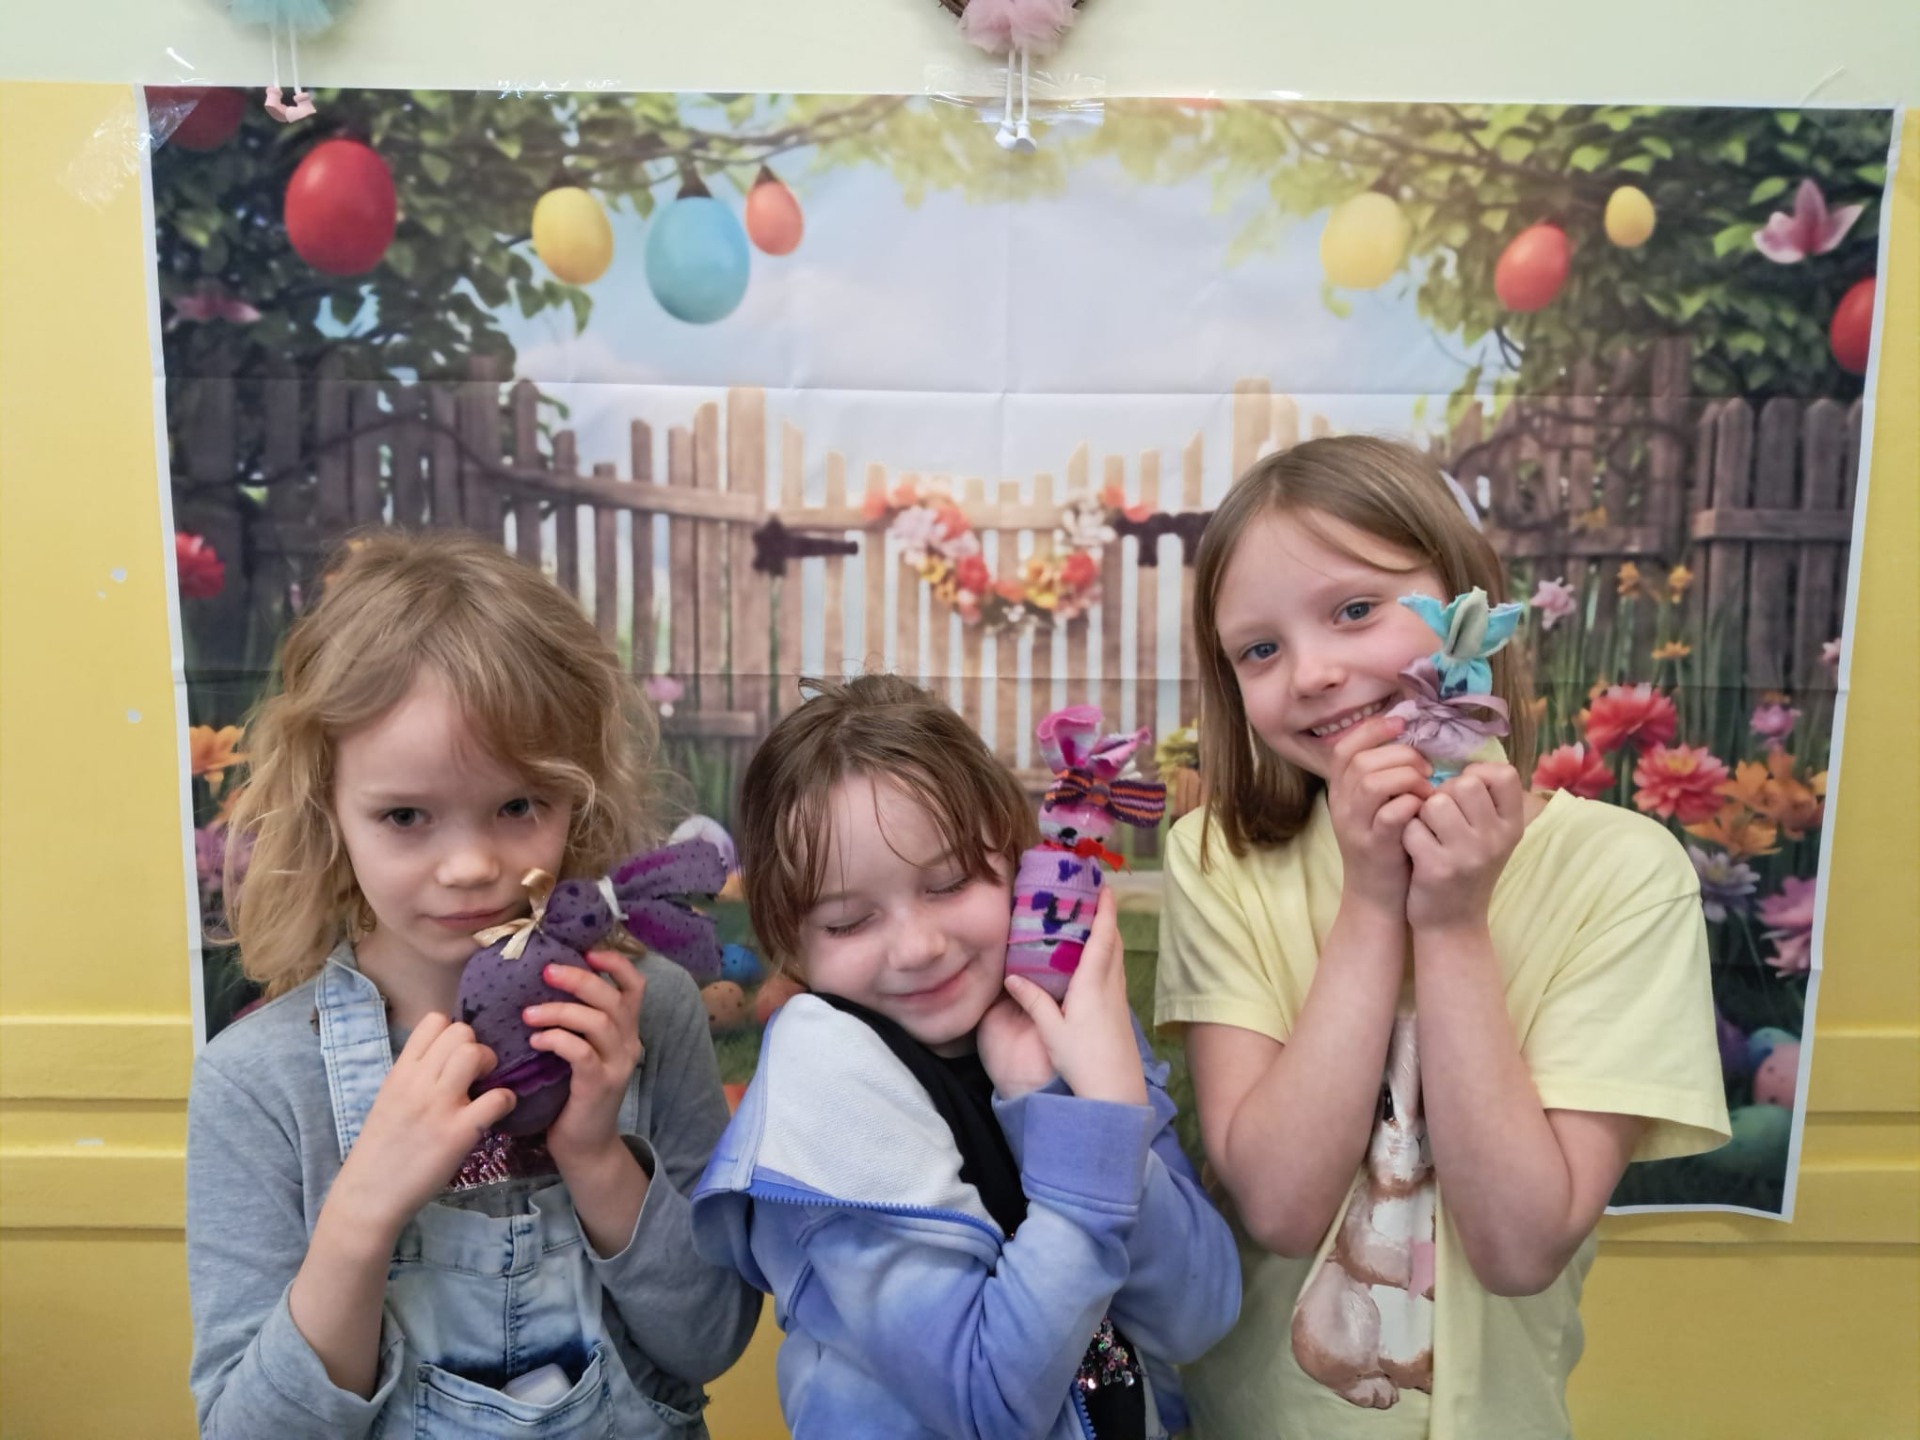 Trzy uczennice pozują do zdjęcia na tle ozdób wielkanocnych takich jak kwiaty i kolorowe pisanki. Dziewczynki trzymają w rękach wielkanocne zające.